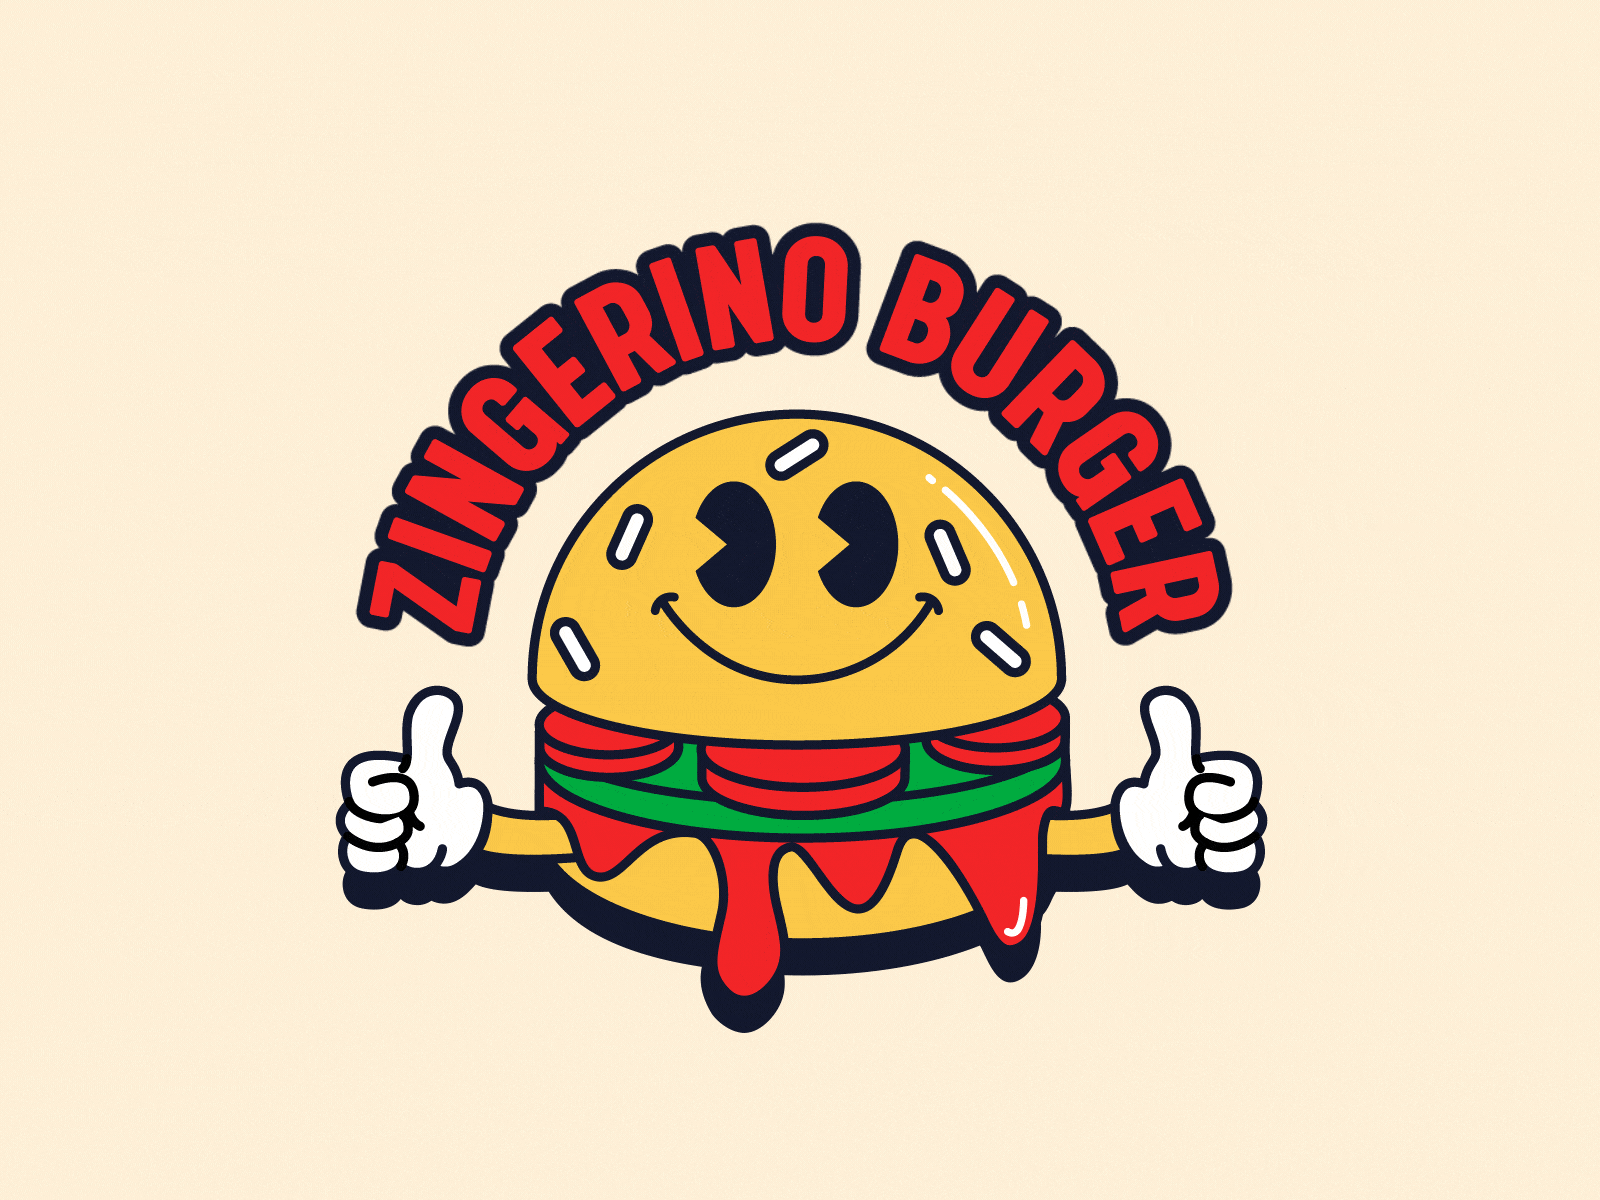 "Zingerino Burger" logo 1930 1930s 2d 2d animation 2d character animation burger cartoon cartoon character character fast food illustration logo logo animation motion design motion graphics positive retro vector vintage